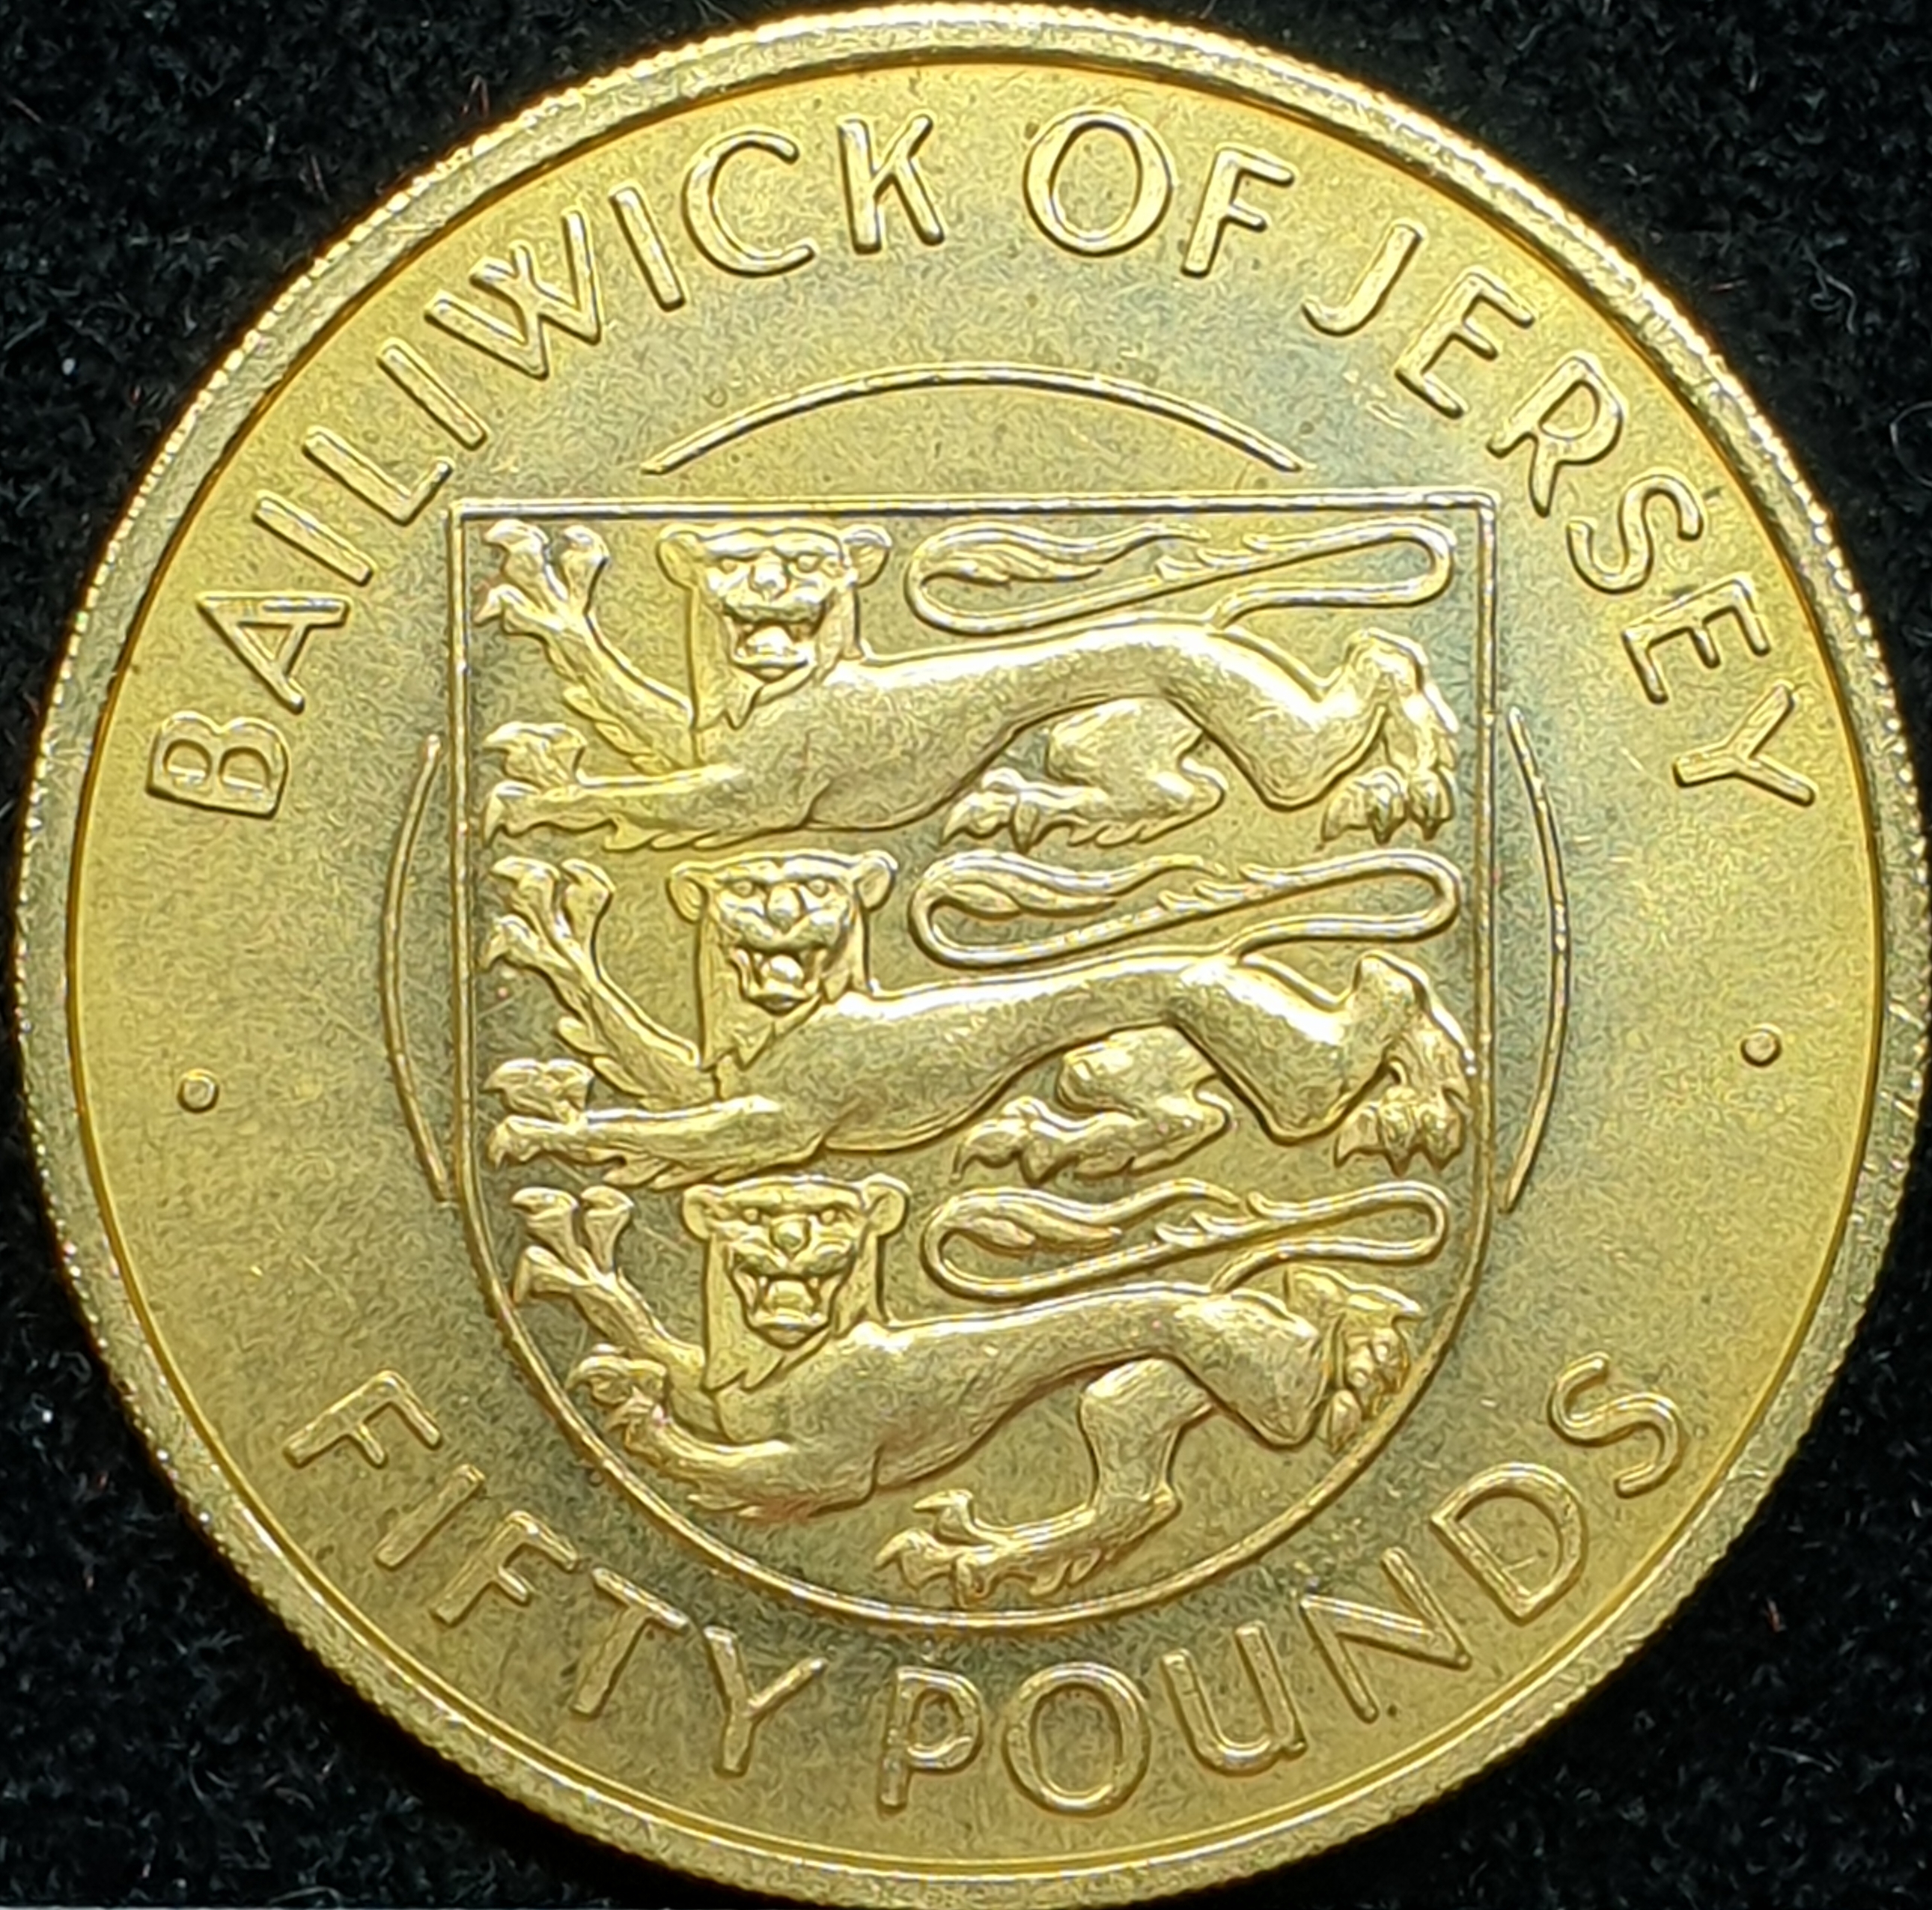 Jersey - 50 pounds - 1972 - Elizabeth II